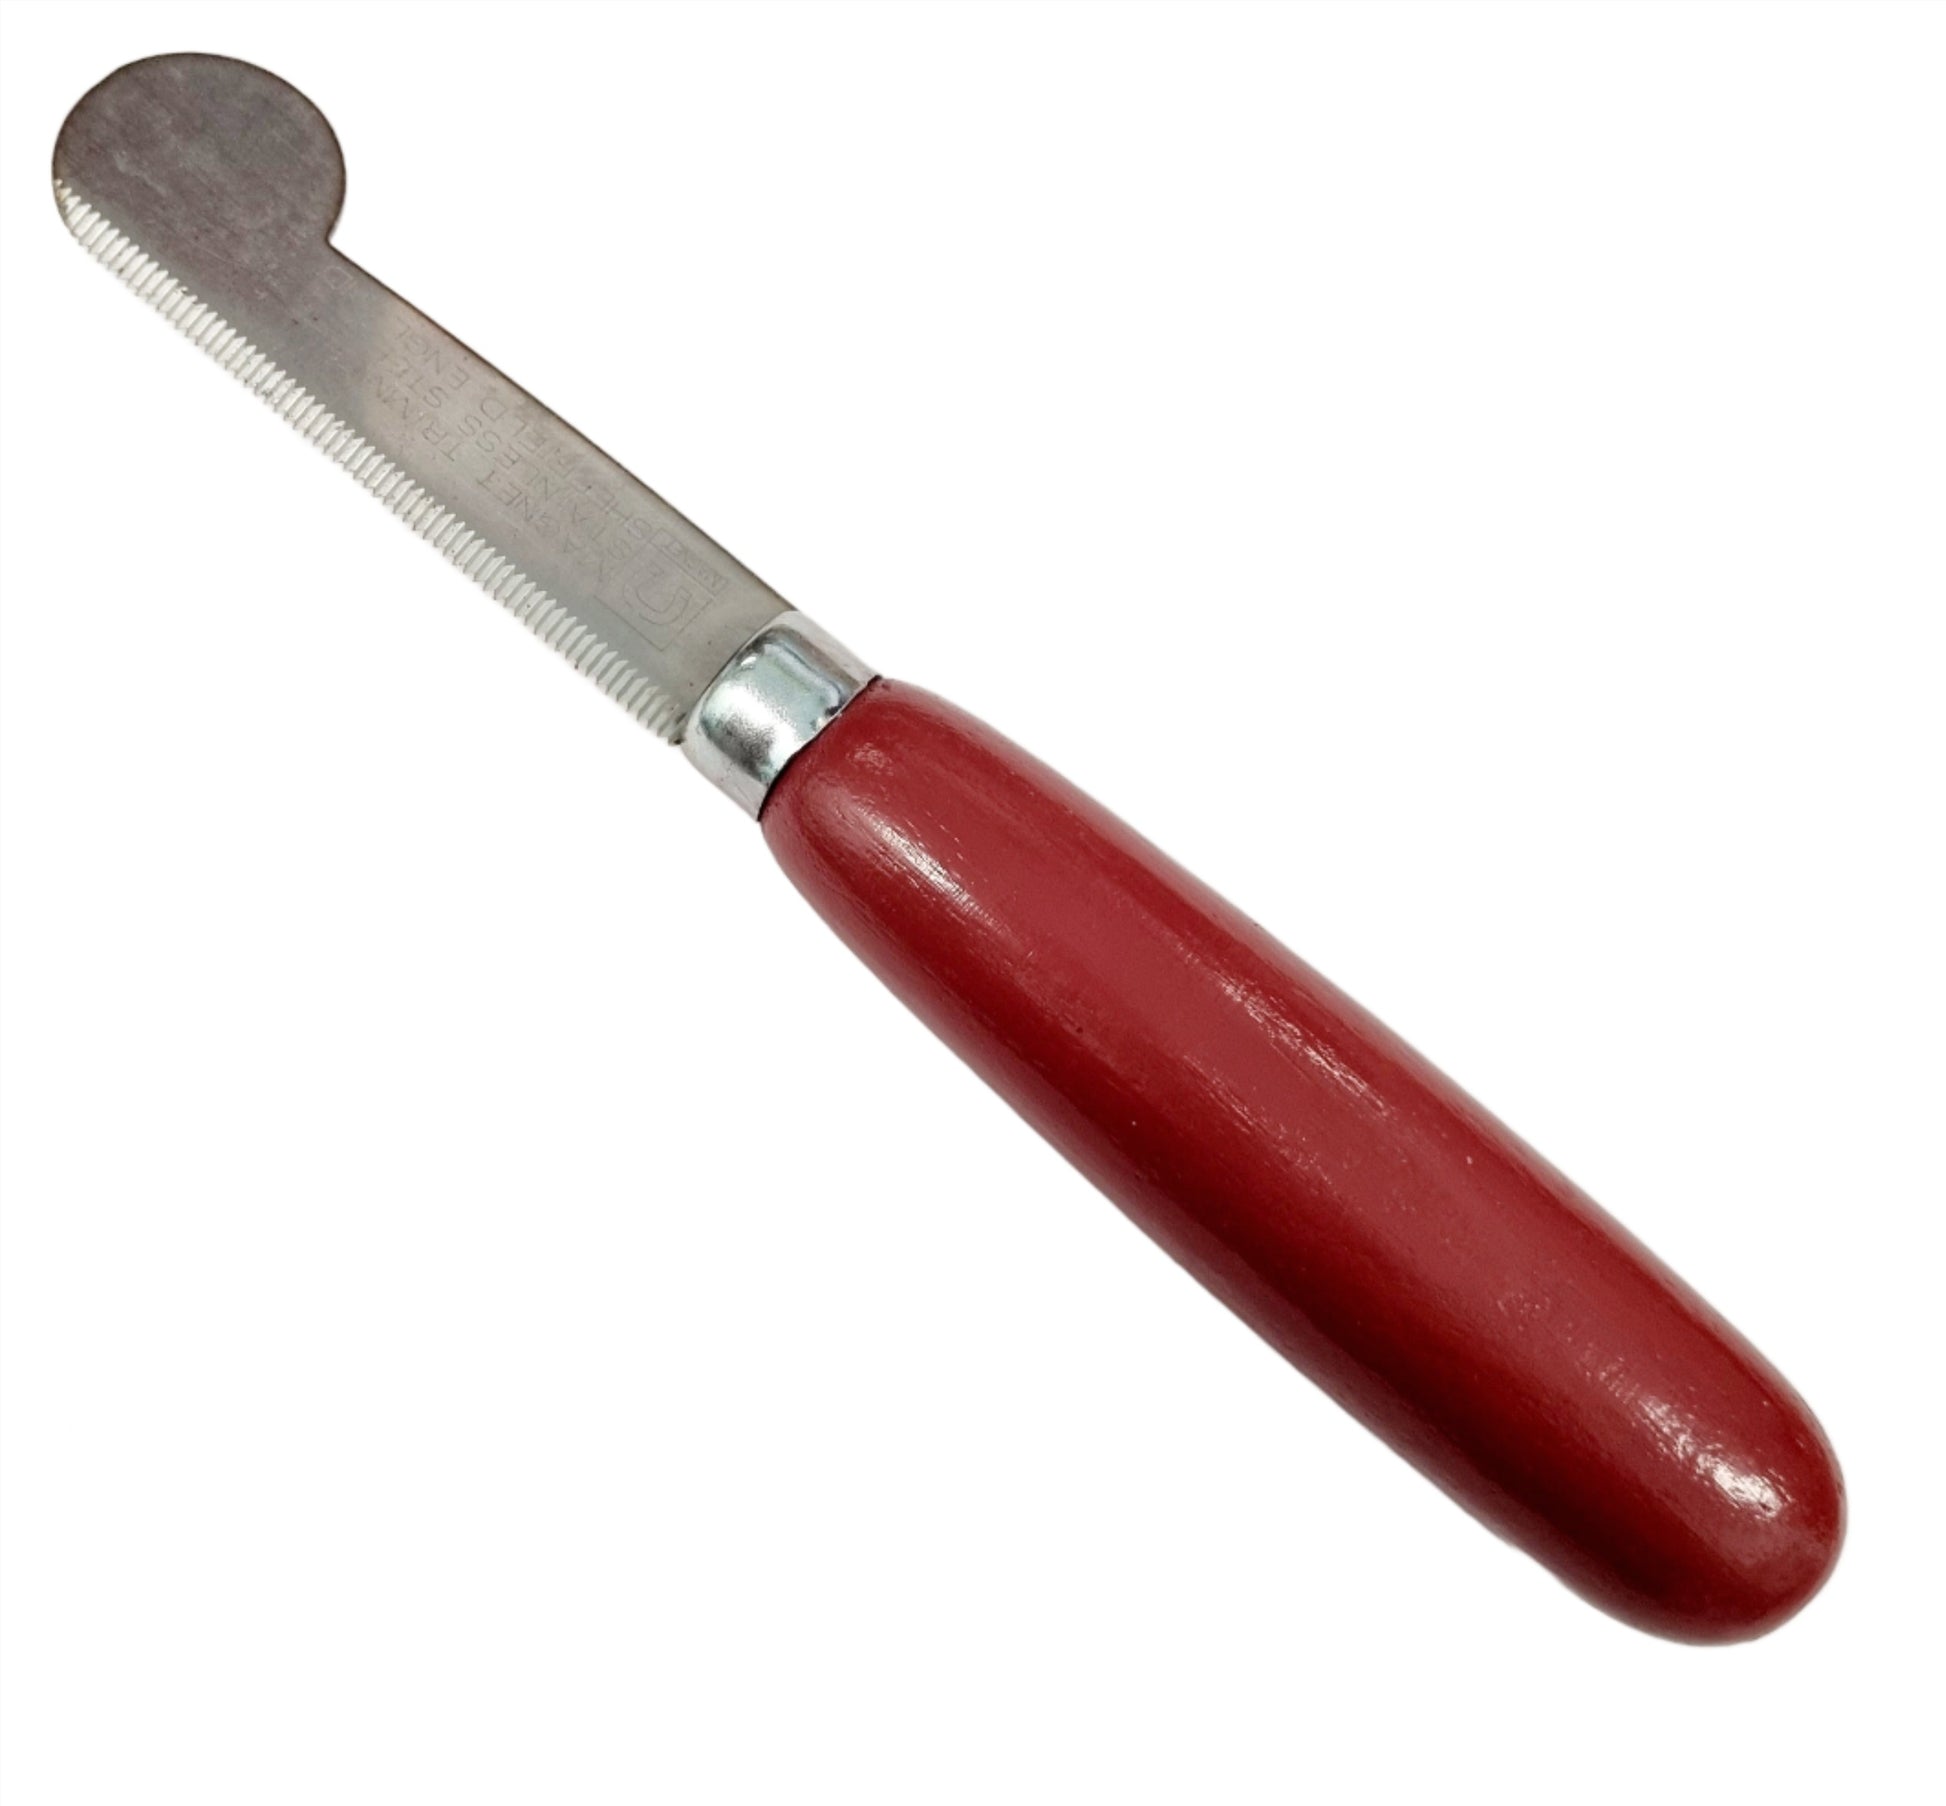 Magnet Stripping Knife - Brown Handle - LEFT HANDED